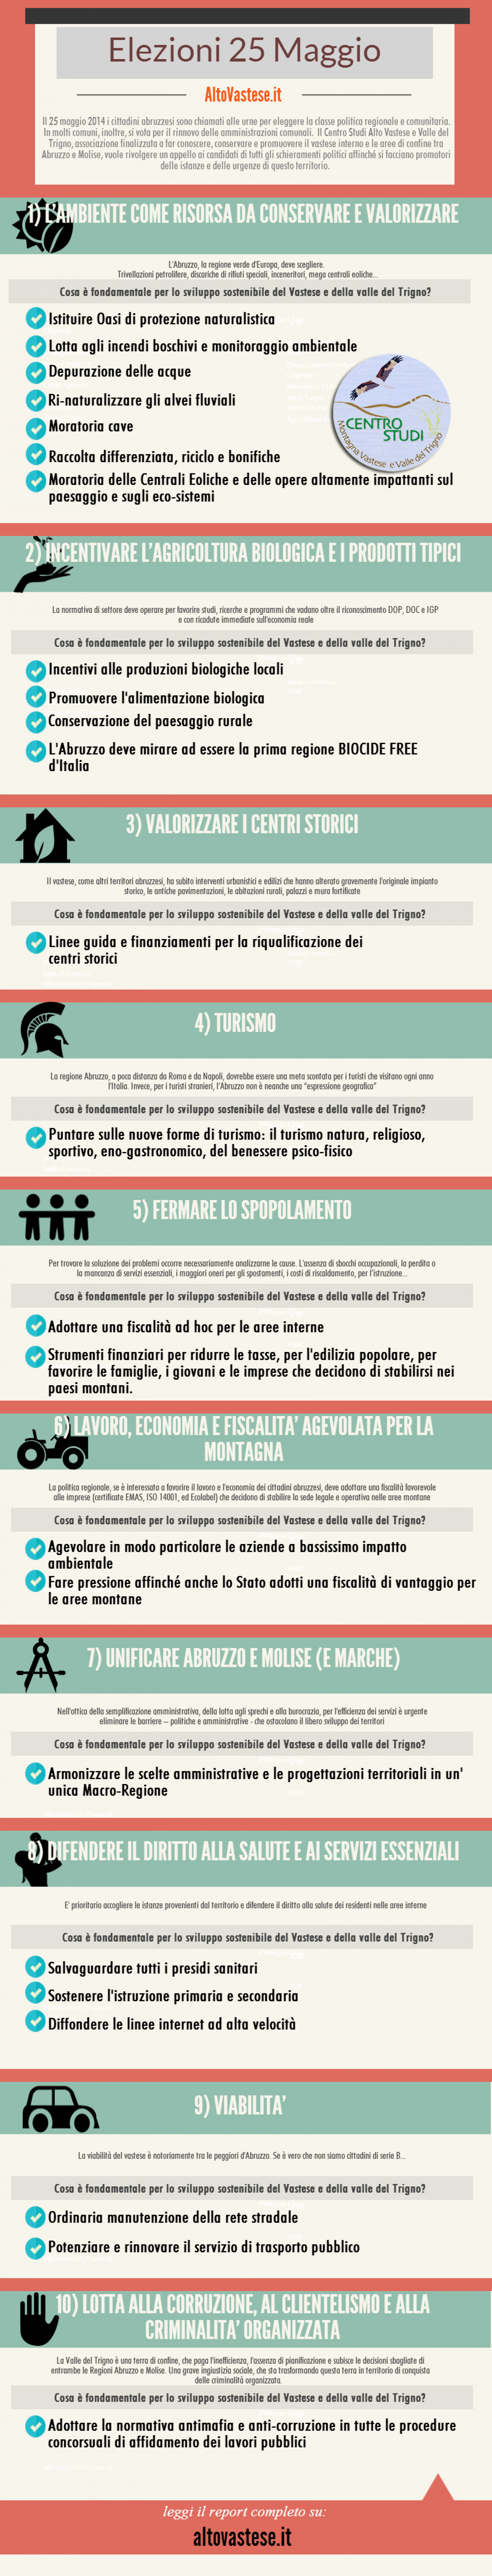 Report Elezioni 2014 Infographic